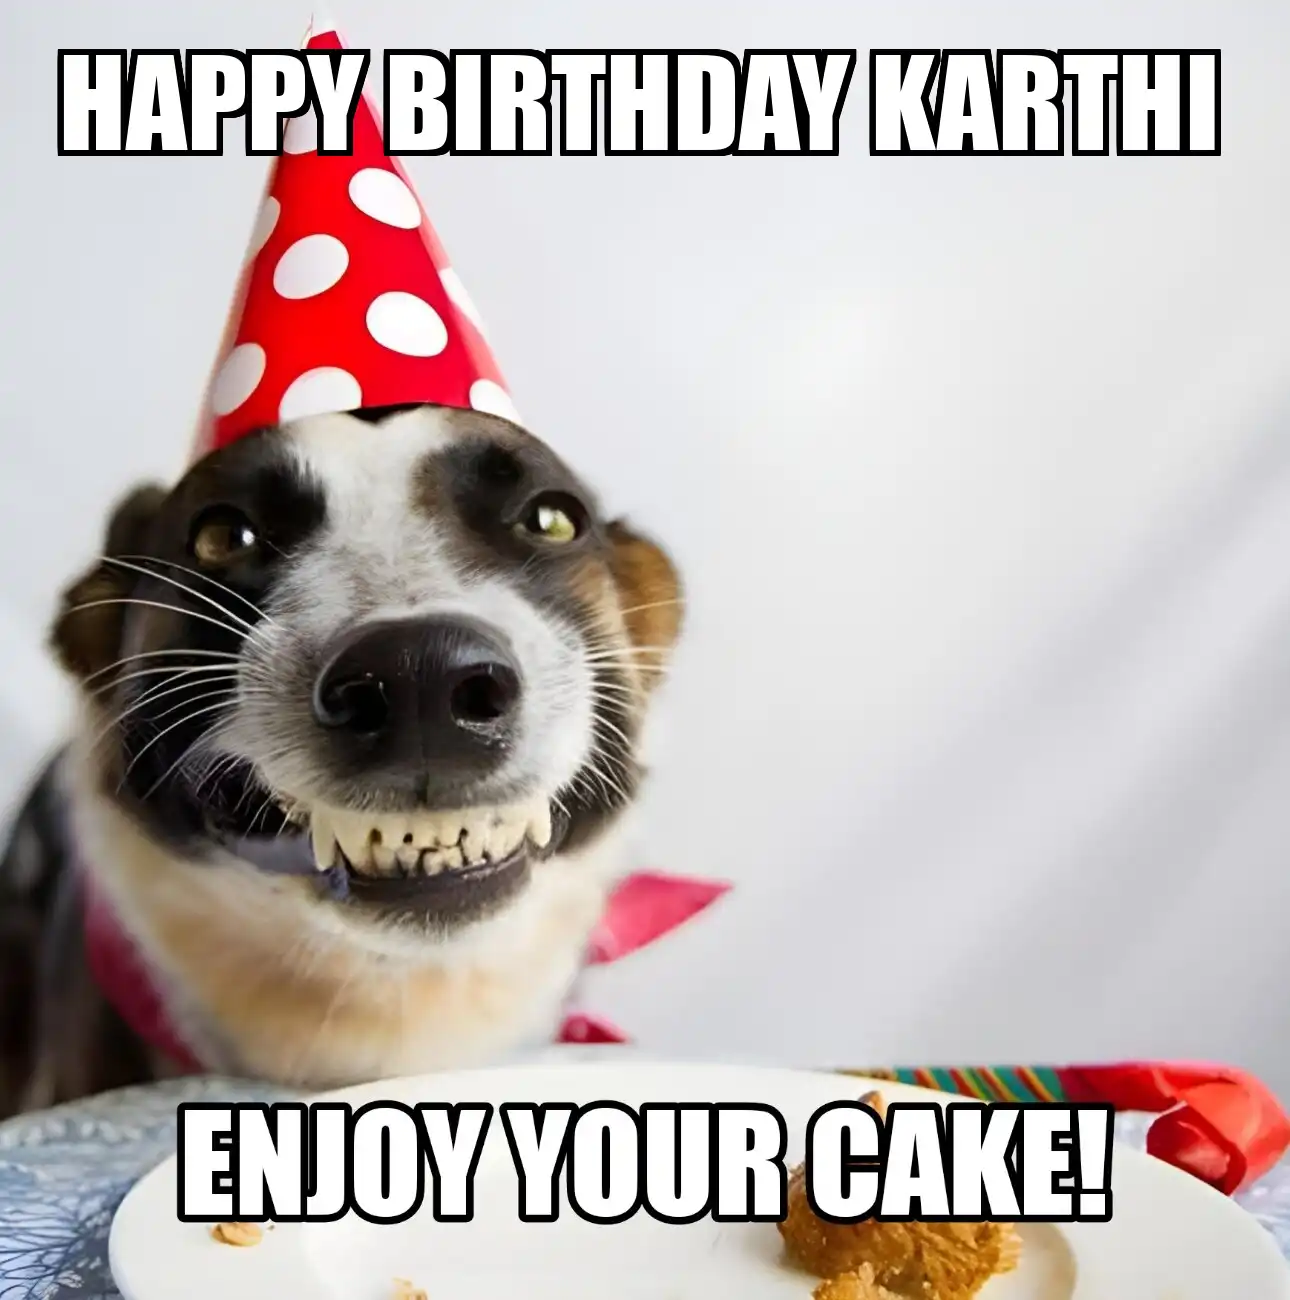 Happy Birthday Karthi Enjoy Your Cake Dog Meme